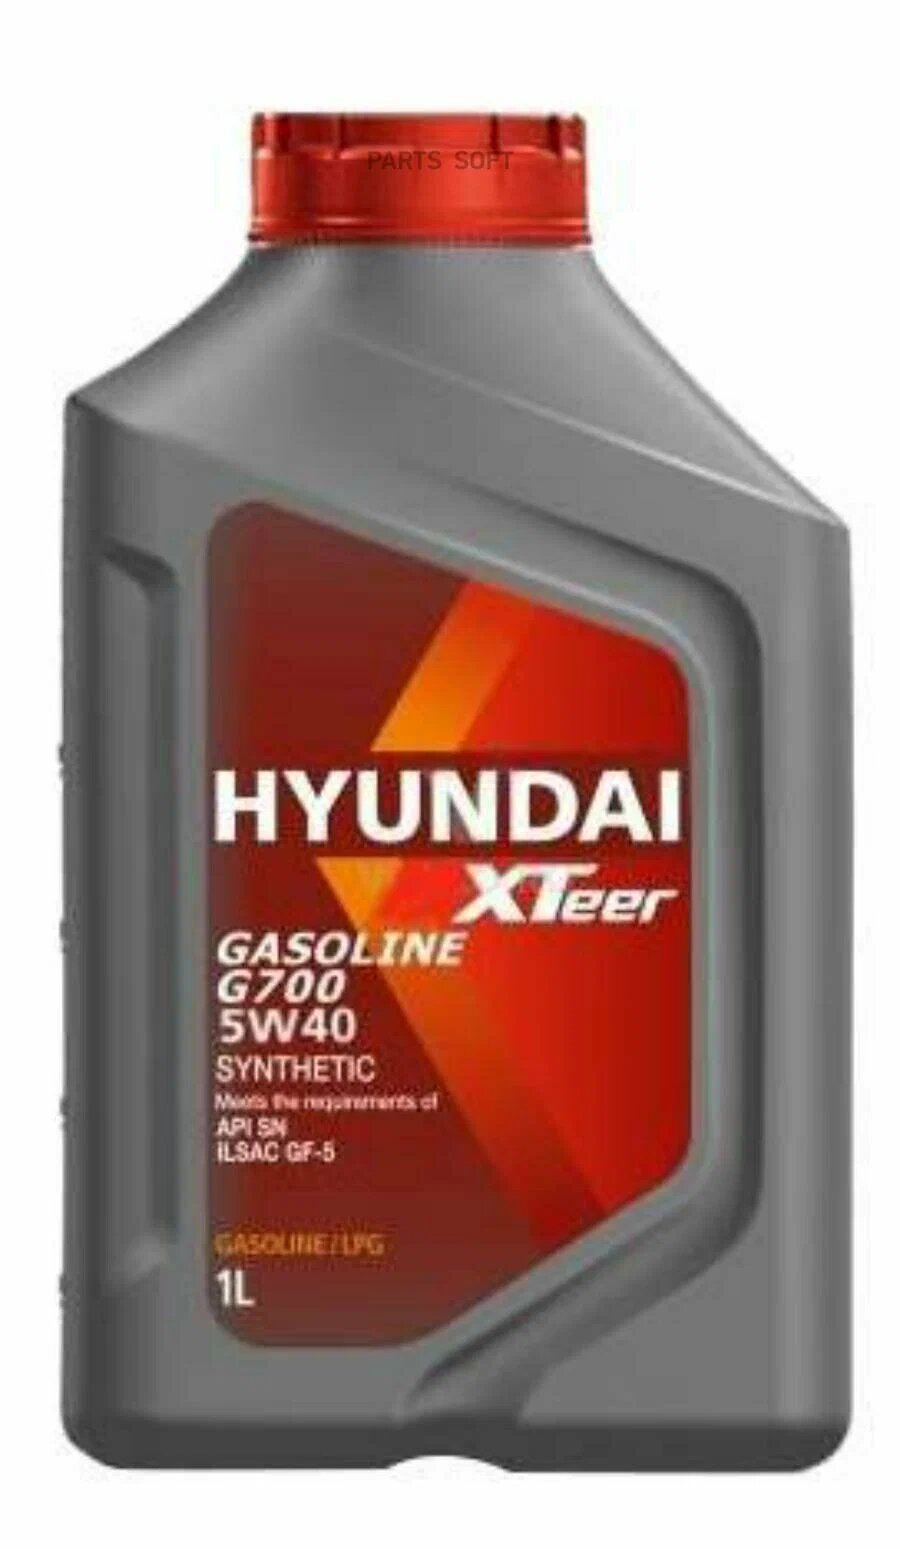 Синтетическое моторное масло HYUNDAI XTeer Gasoline G700 5W-40, 1 л, 1 шт.